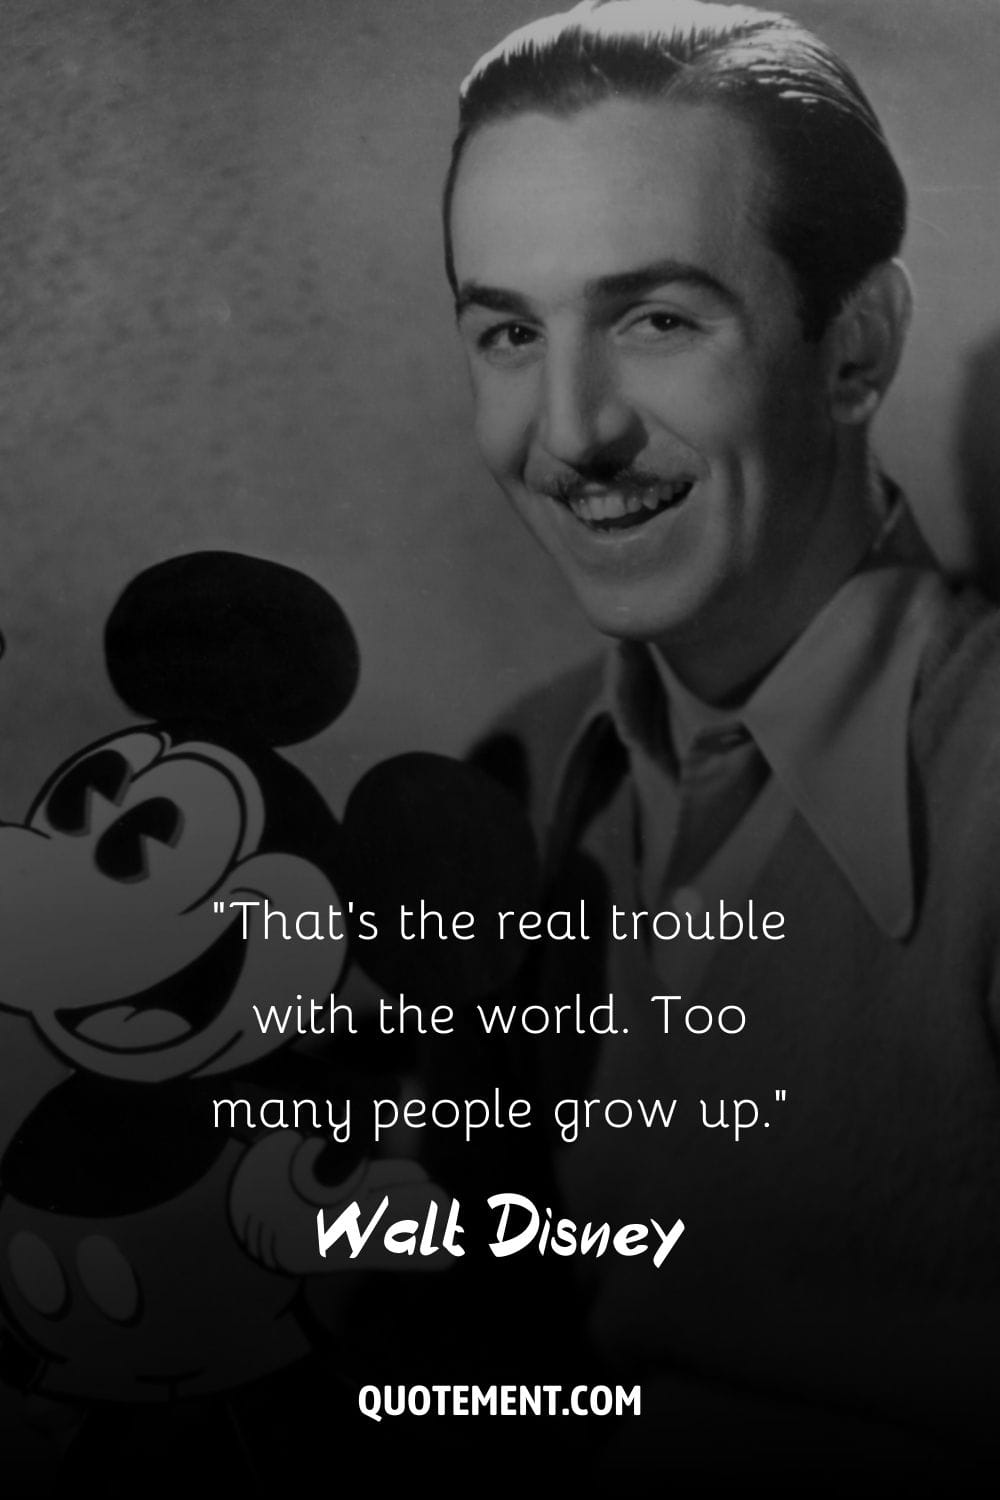 Imagen de Walt Disney representando la cita más icónica de Walt Disney.